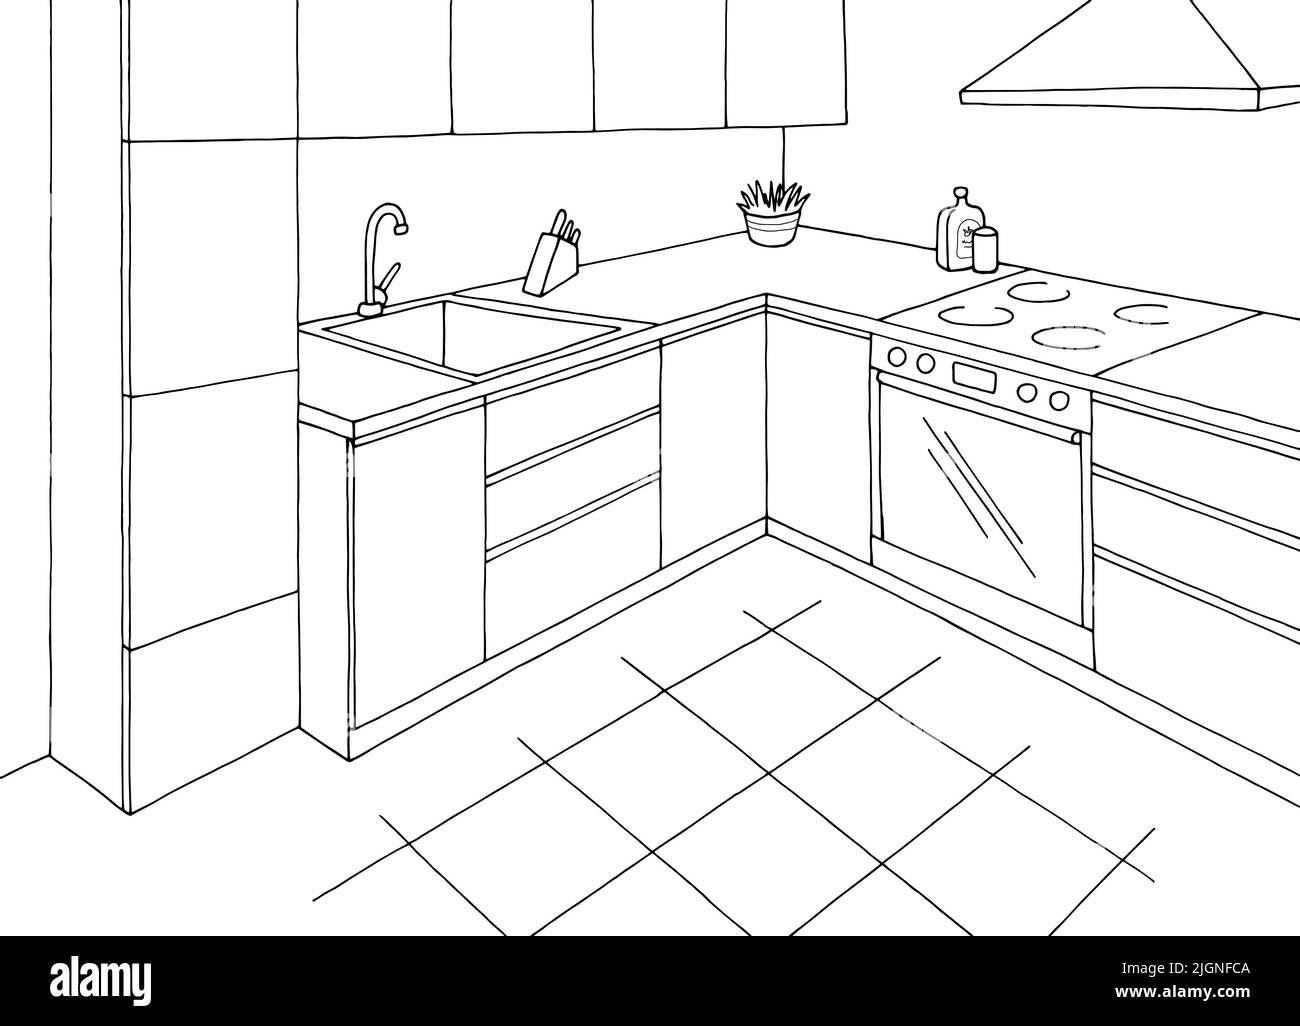 Cocina Moderna En Blanco Y Negro Con Armario Microondas Fregadero Stock de  ilustración - Ilustración de grifo, elegante: 266088215